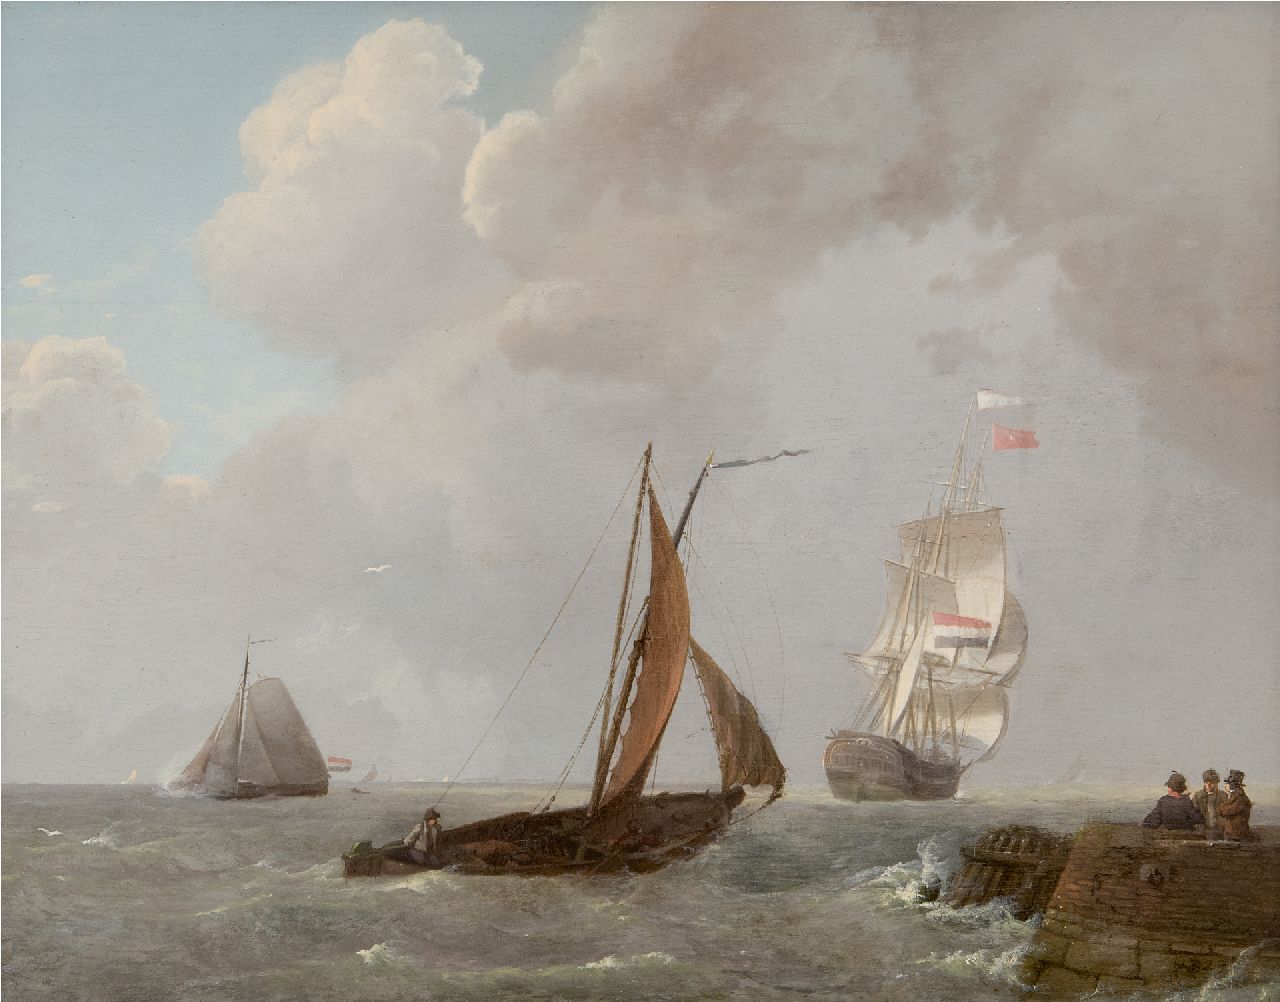 Koekkoek J.  | Johannes Koekkoek, Laverende zeilschepen in de Zeeuwse wateren, olieverf op paneel 30,0 x 38,9 cm, gesigneerd rechtsonder en gedateerd 1829